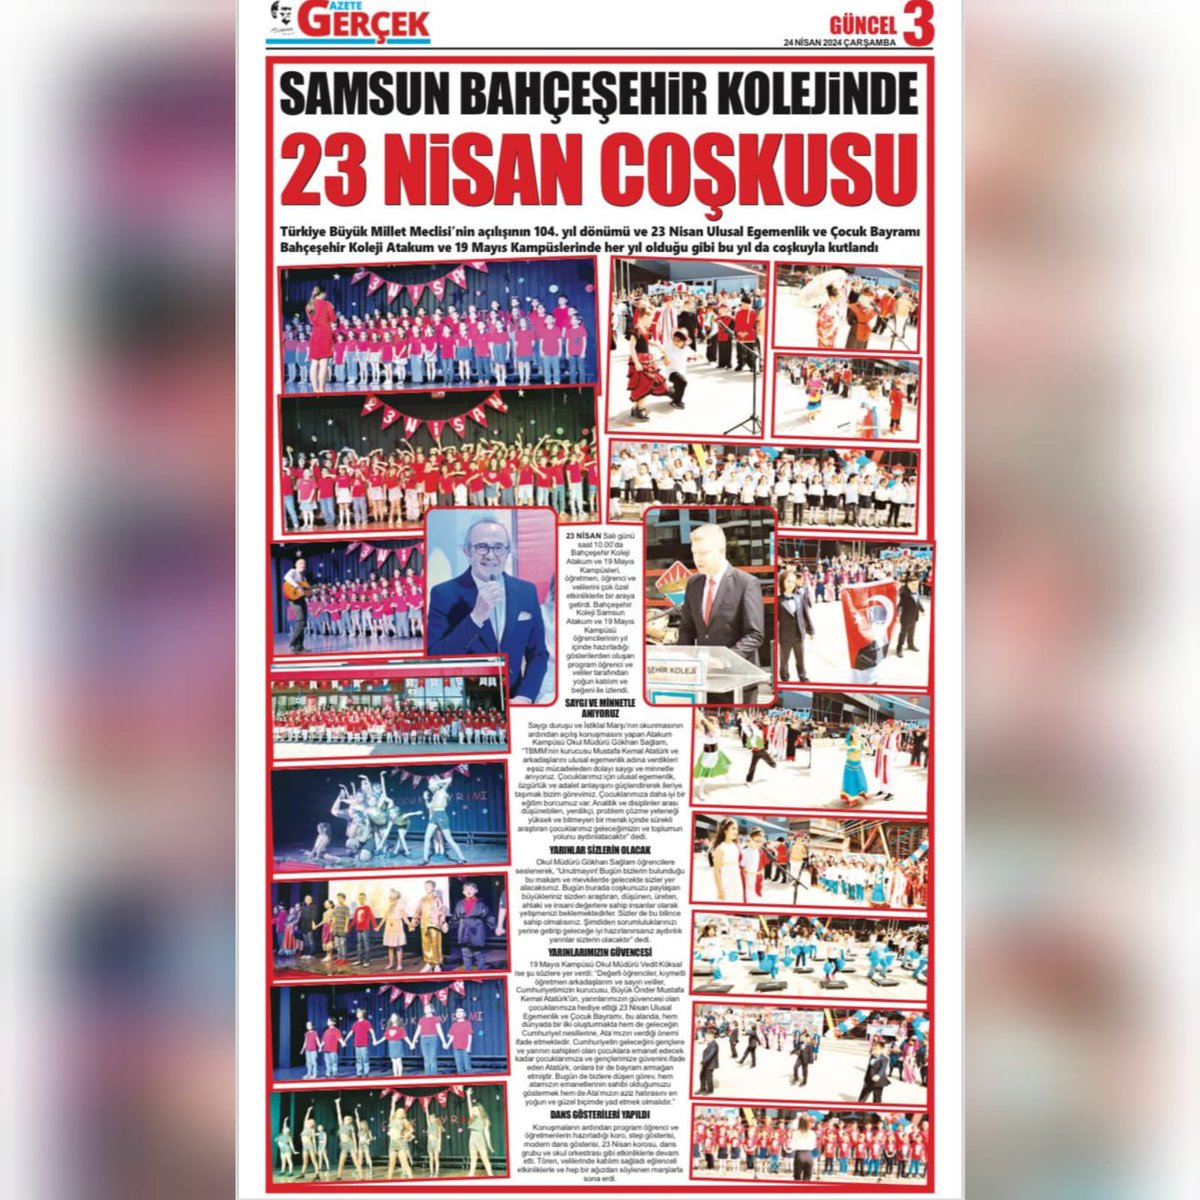 Bahçeşehir Kolejindeki “23 Nisan Coşkusu” Samsun basınında geniş yer buldu. (Samsun Gazetesi-Gazete Gerçek-Halk Gazetesi 24.04.2024)